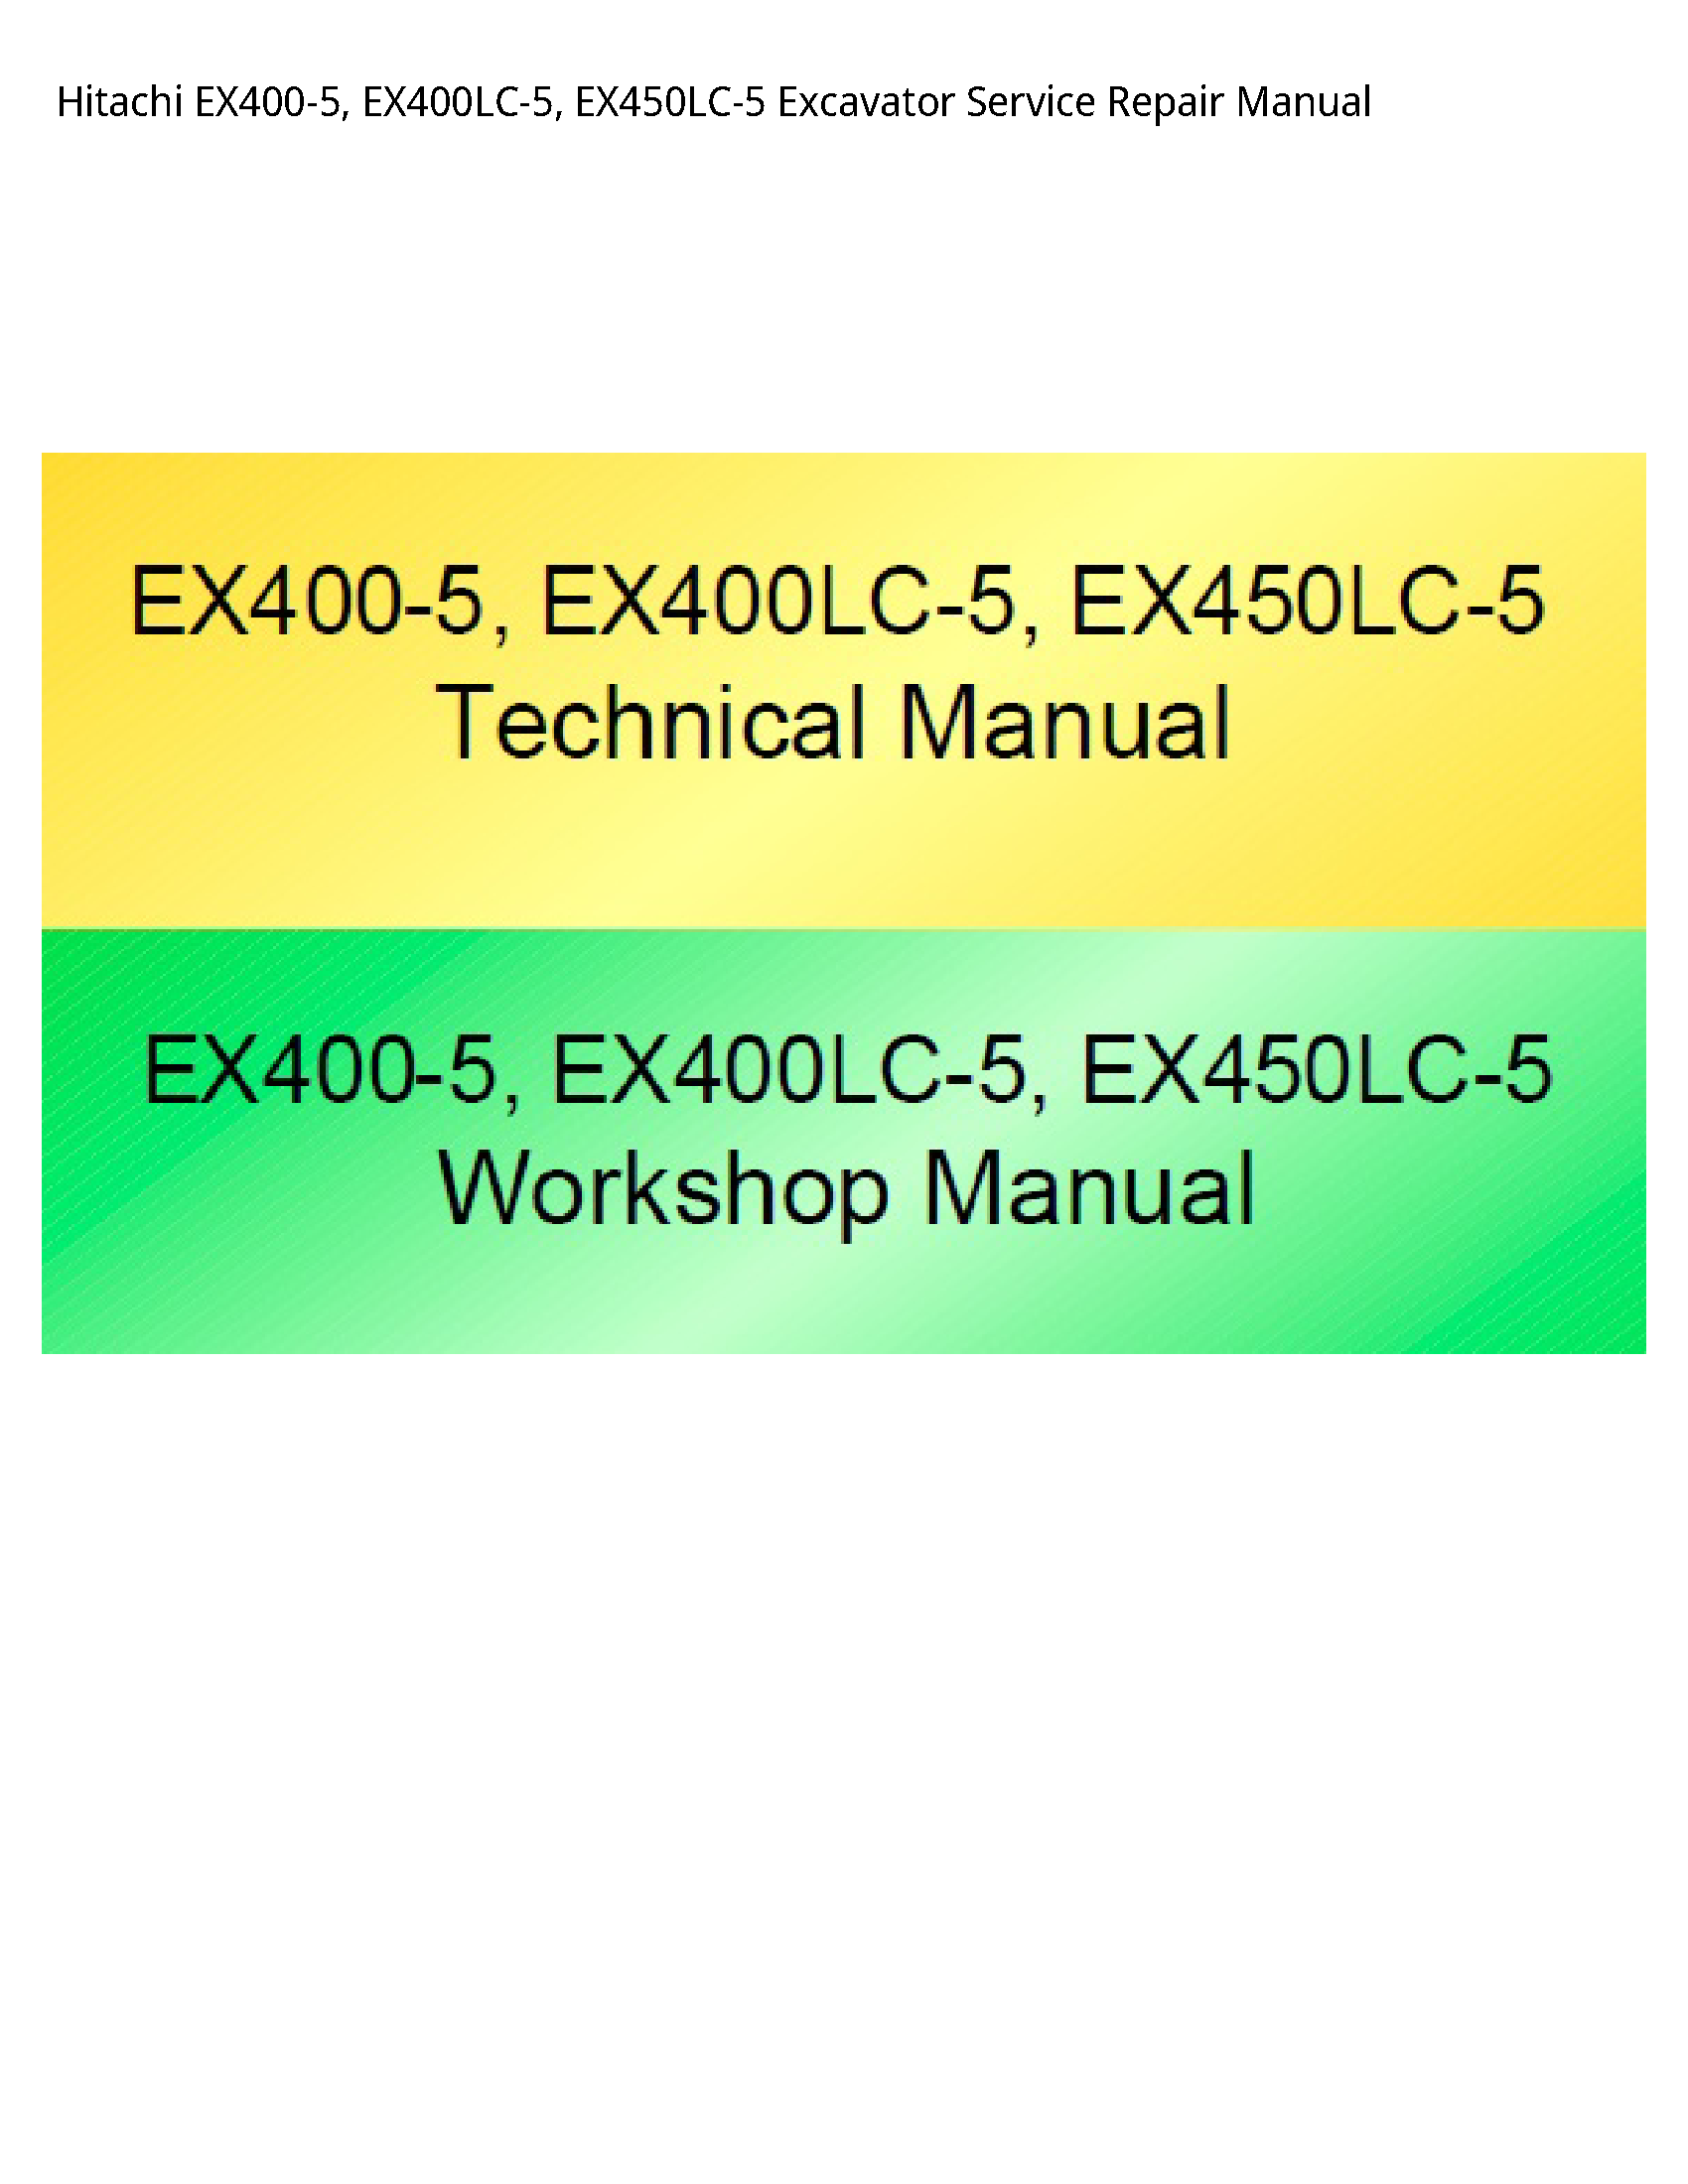 Hitachi EX400-5 Excavator manual